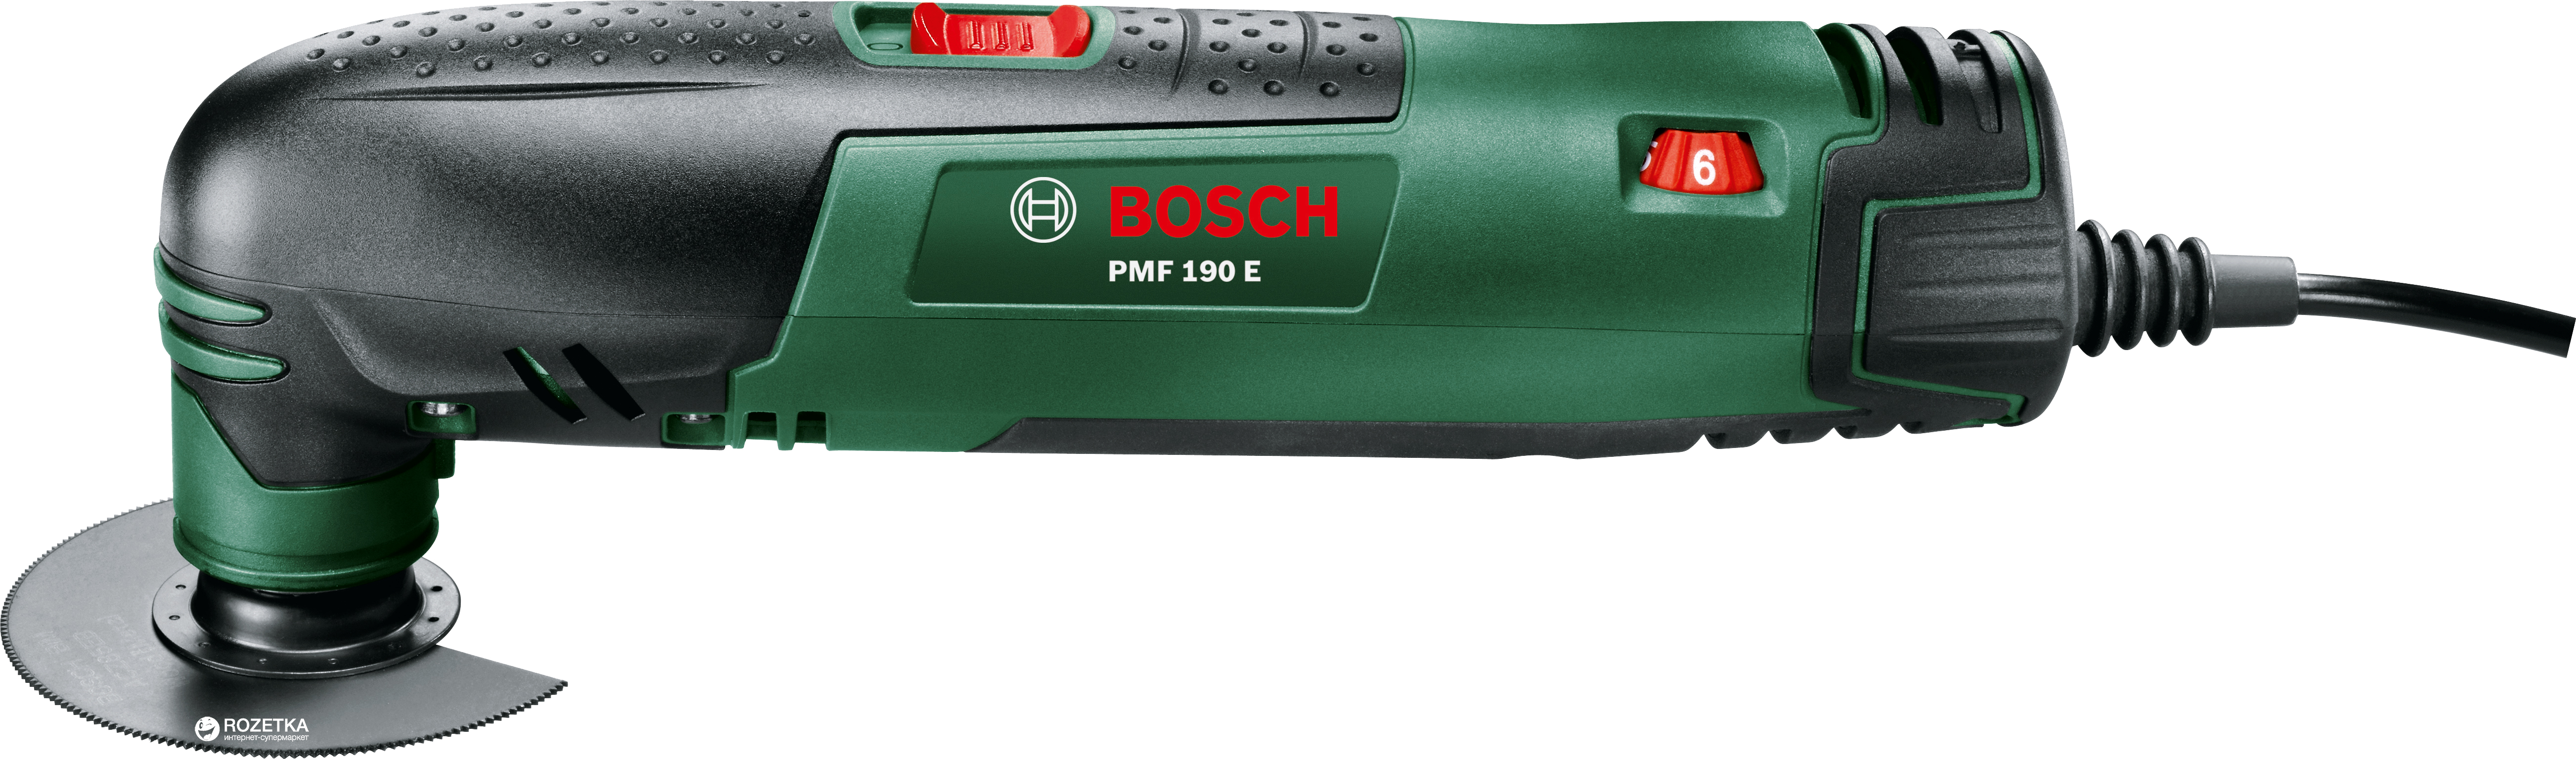 Набор Bosch PMF 190 E Set фото, отзывы, в ROZETKA | Купить Украине: Киеве, Харькове, Днепре, Одессе, Запорожье, Львове